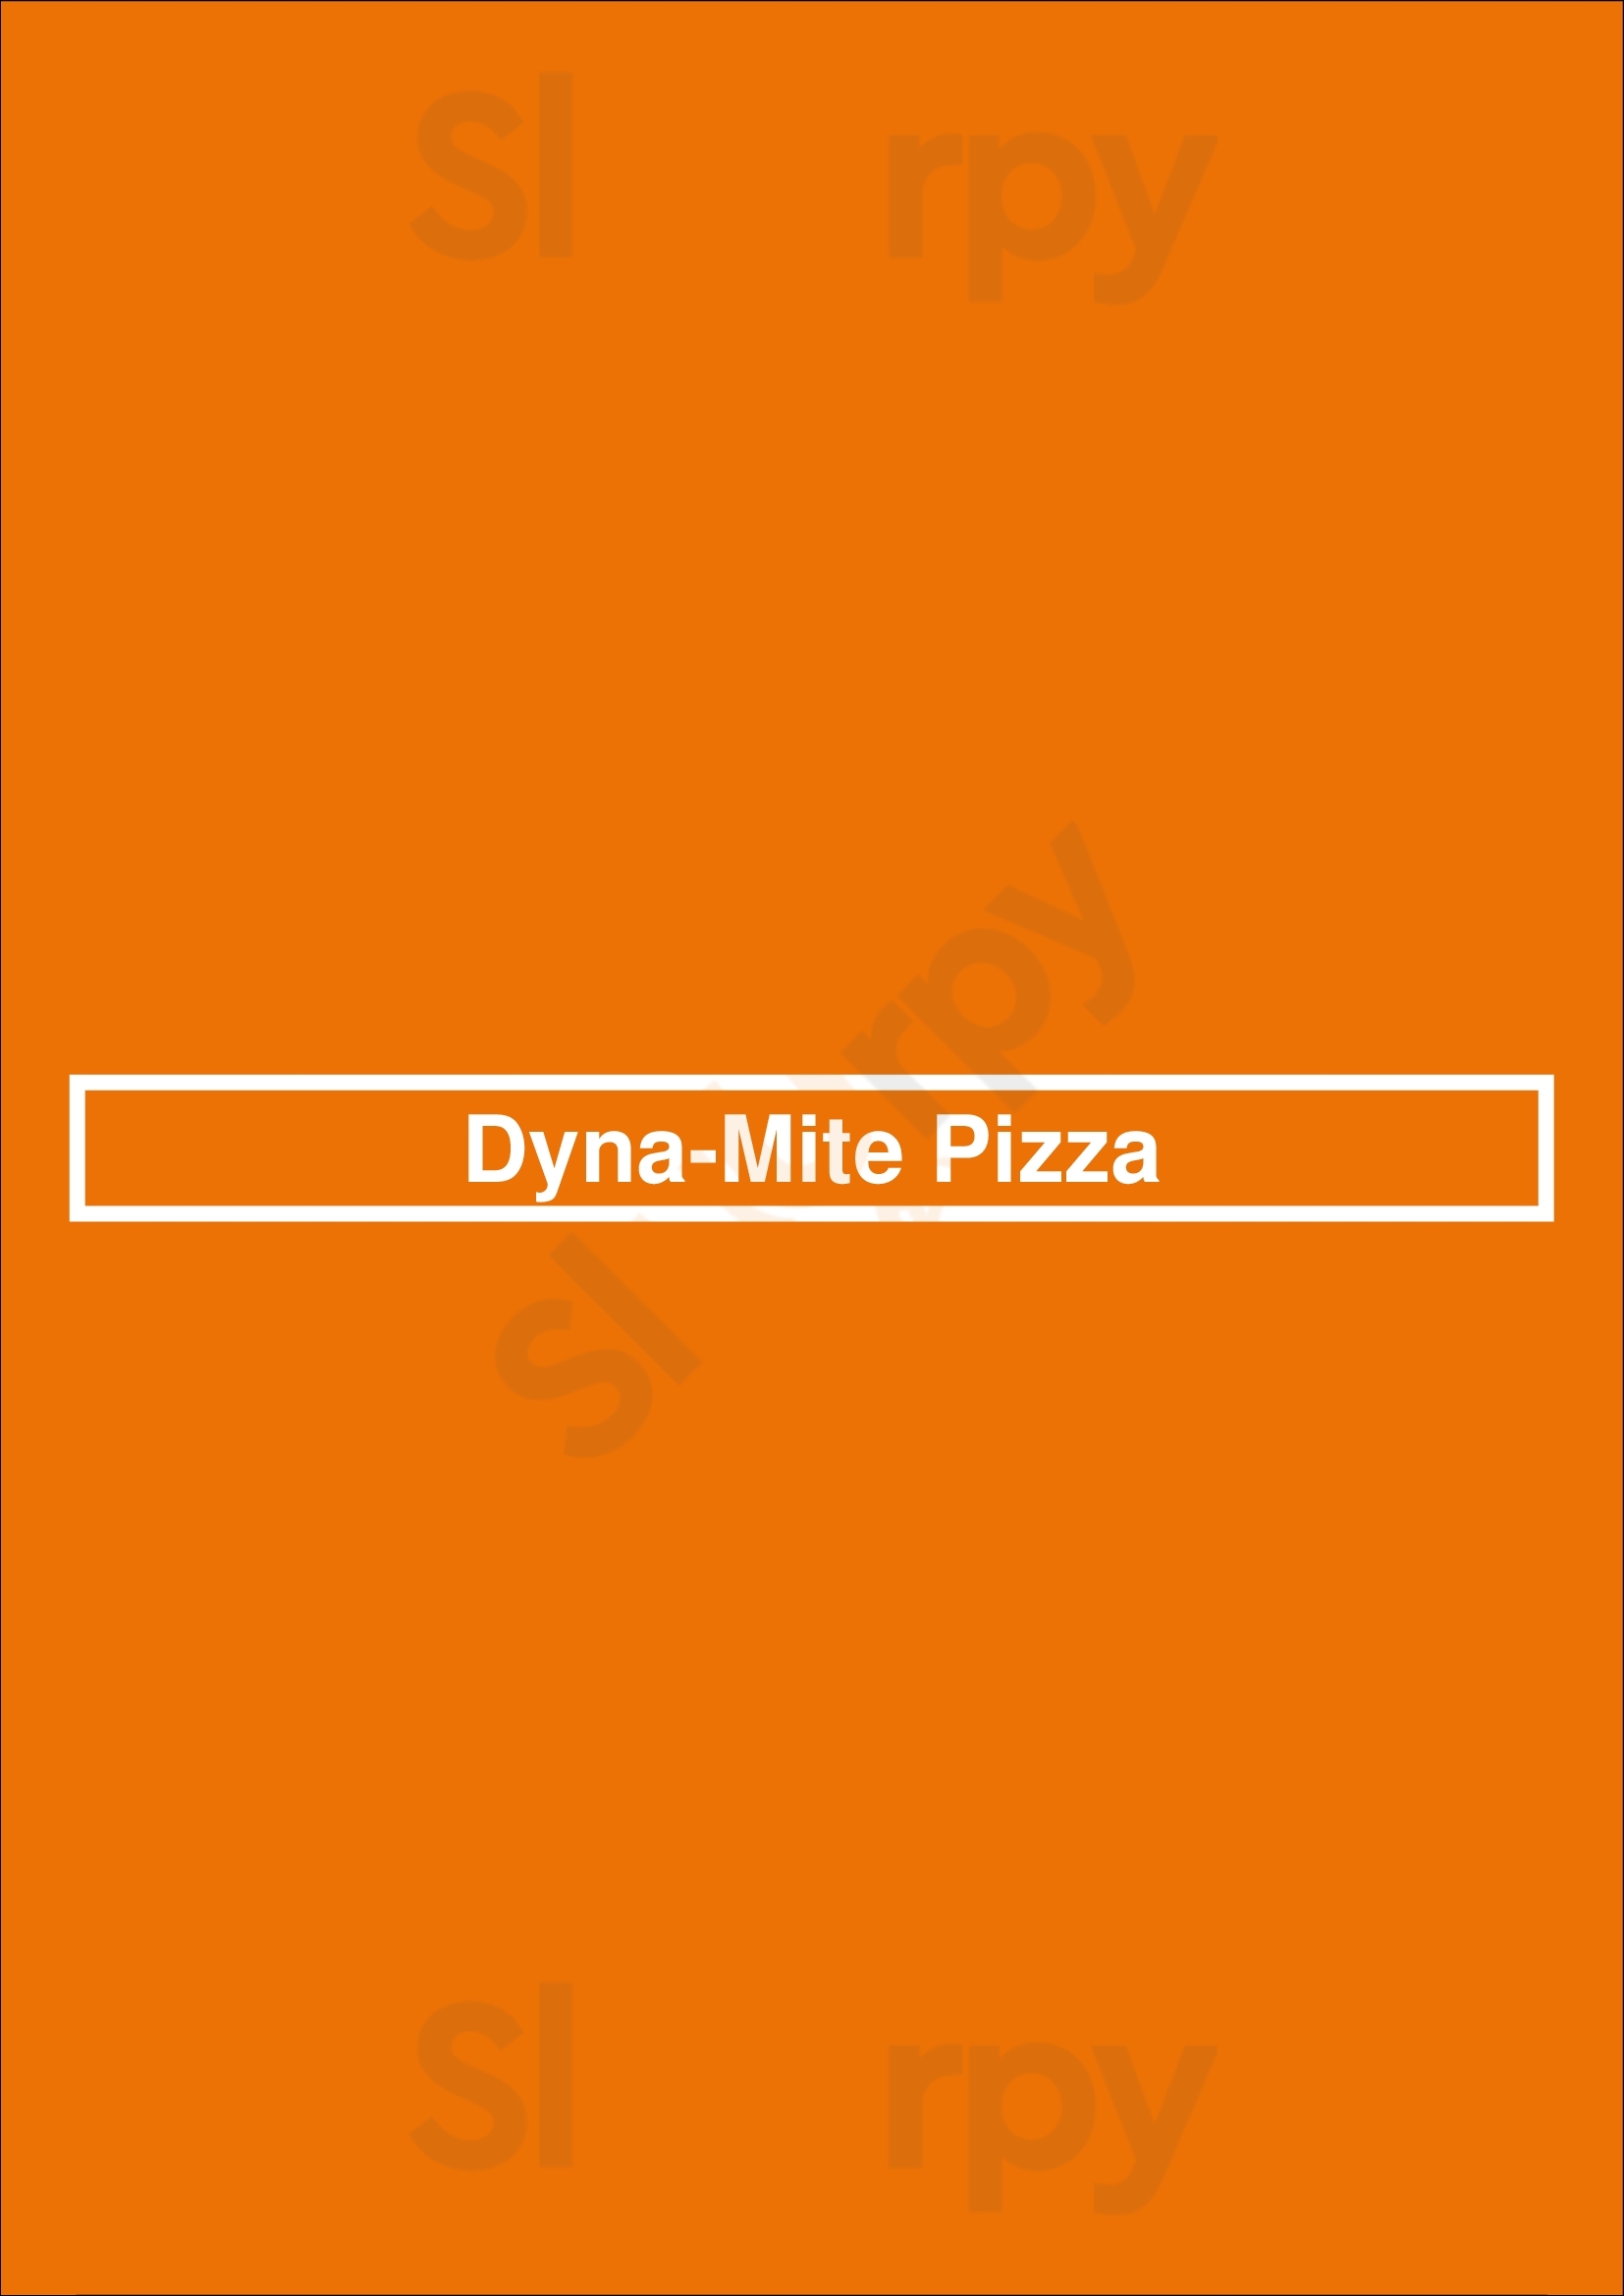 Dyna-mite Pizza Newcastle upon Tyne Menu - 1